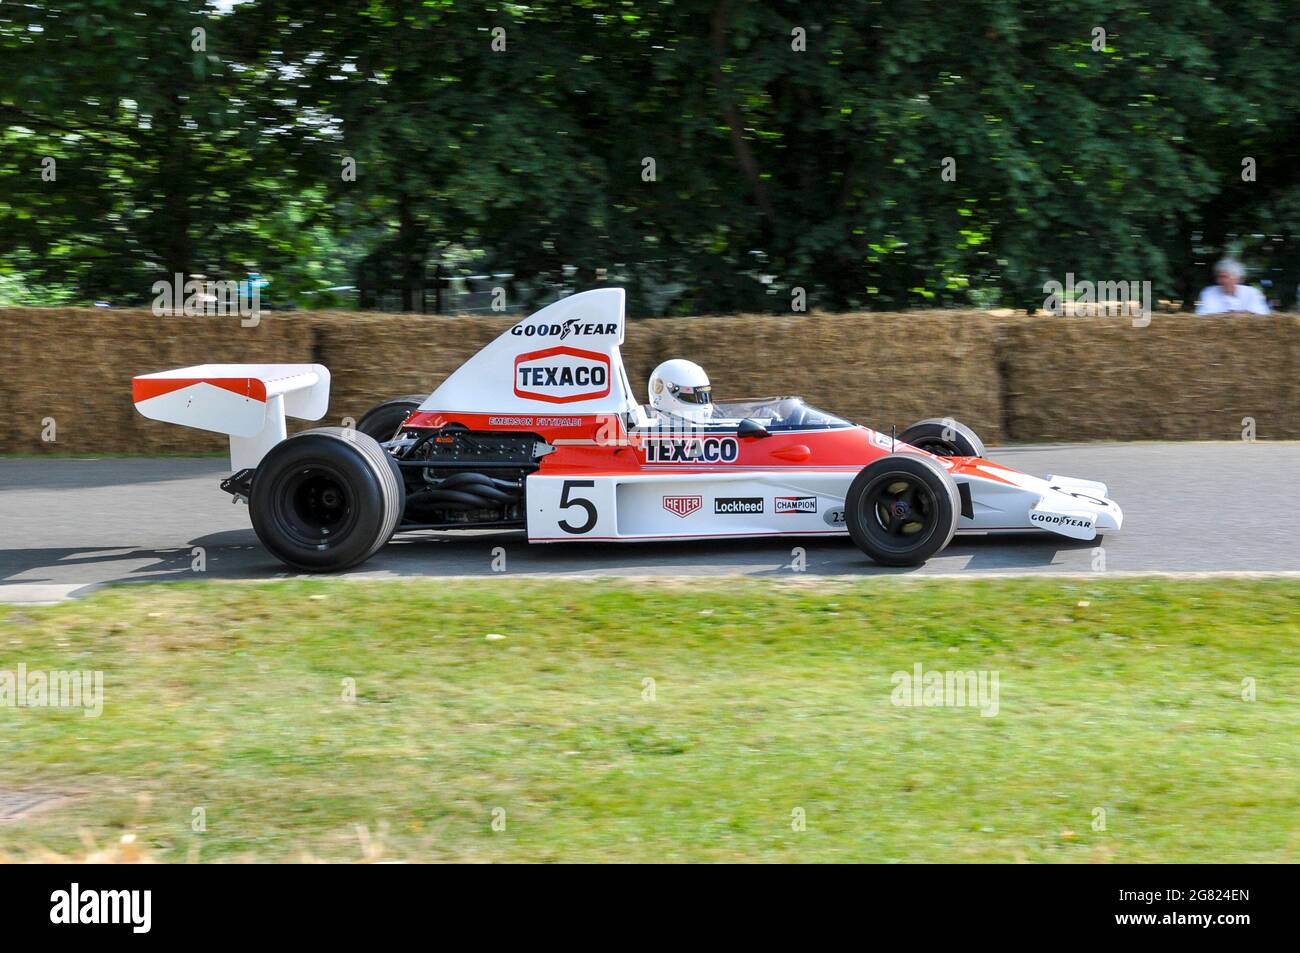 McLaren M23 Grand-Prix-Rennwagen, die beim Goodwood Festival of Speed 2013 die Bergauffahrt besteigen. 1974 Emerson Fittipaldi Formel-1-Rennwagen Stockfoto